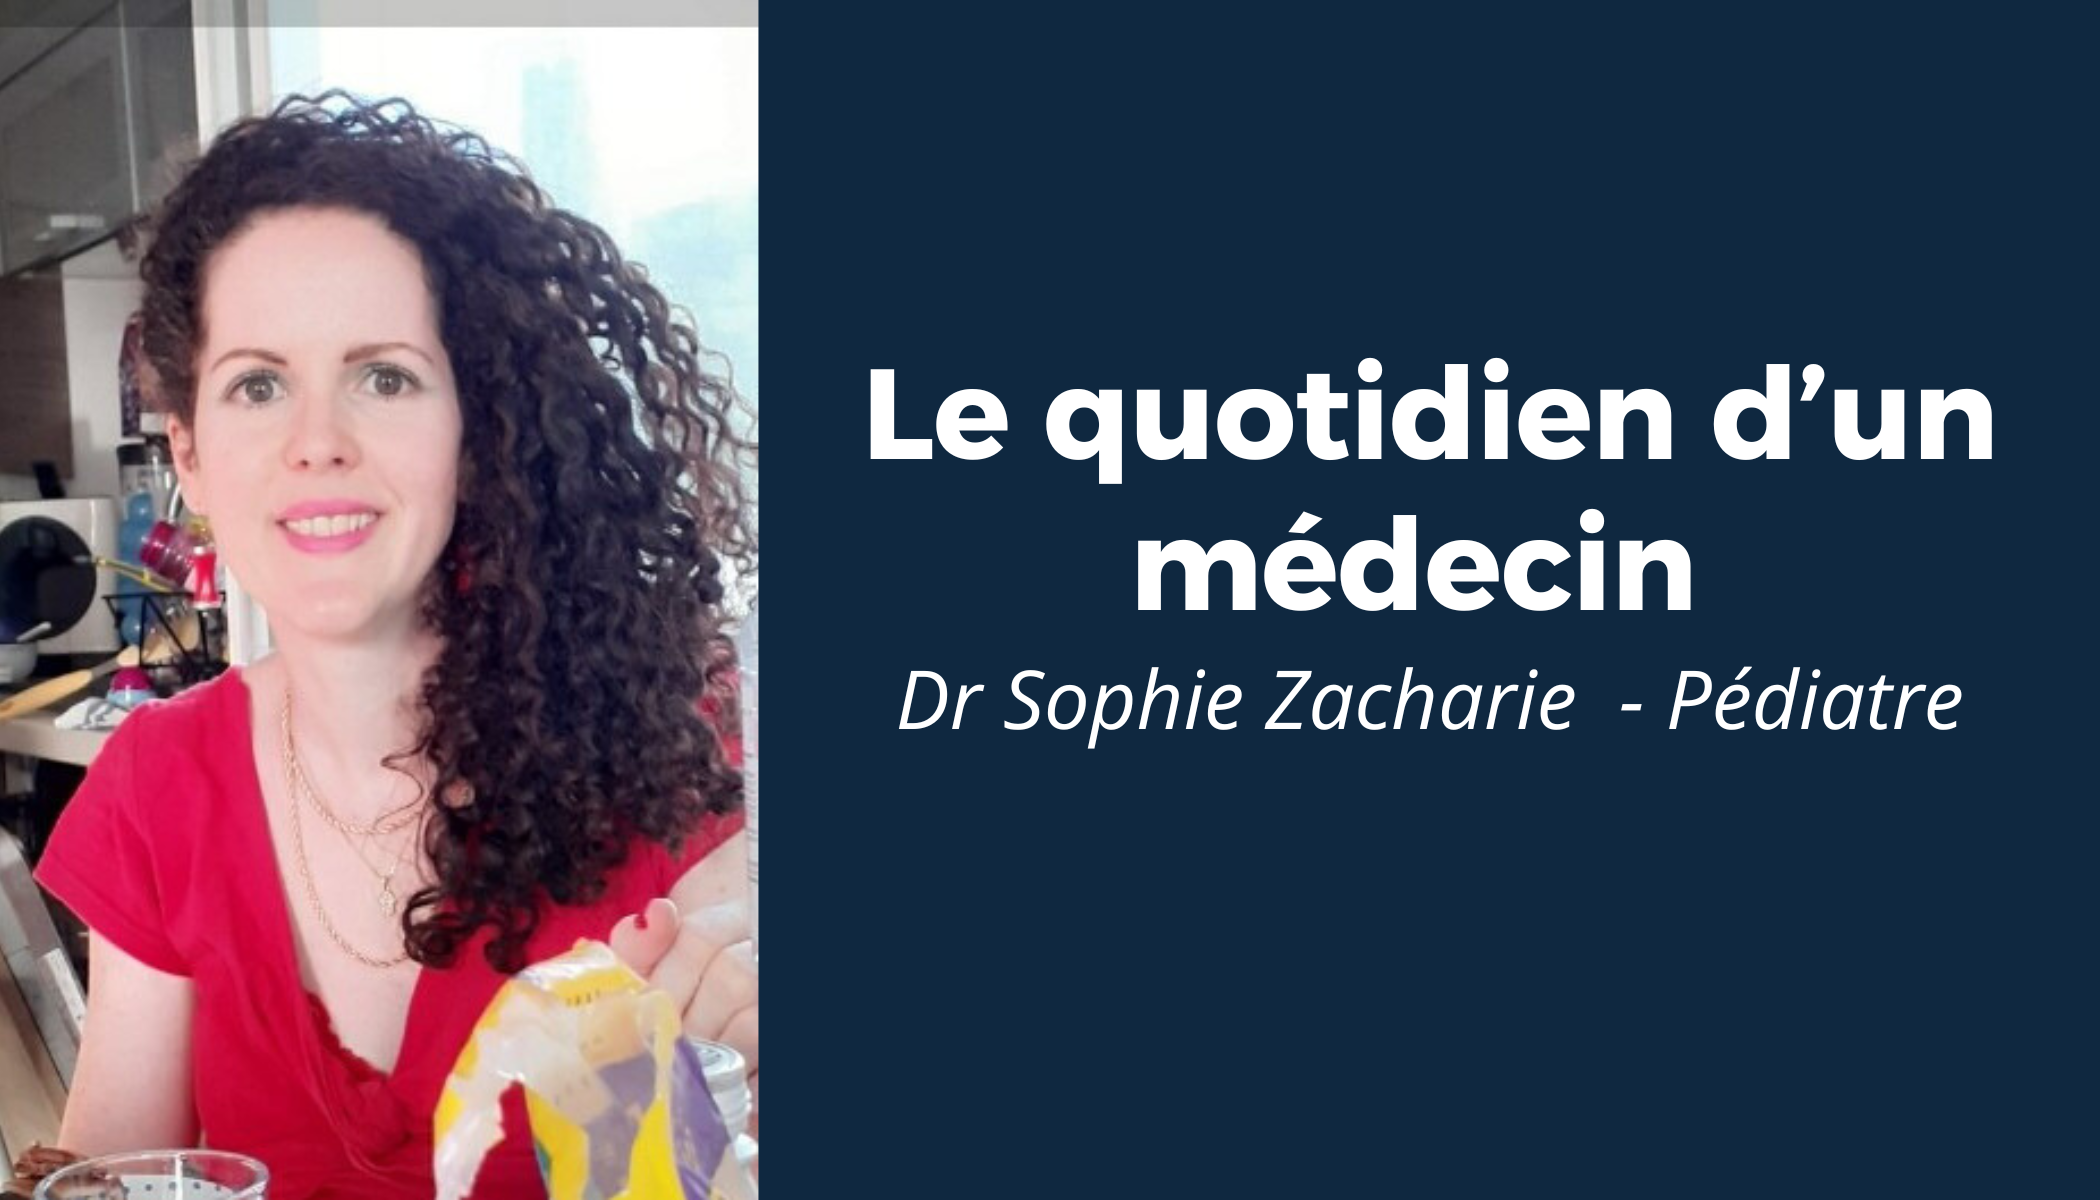 “Le quotidien d’un médecin” #5 - Rencontre avec le Dr Sophie Zacharie 